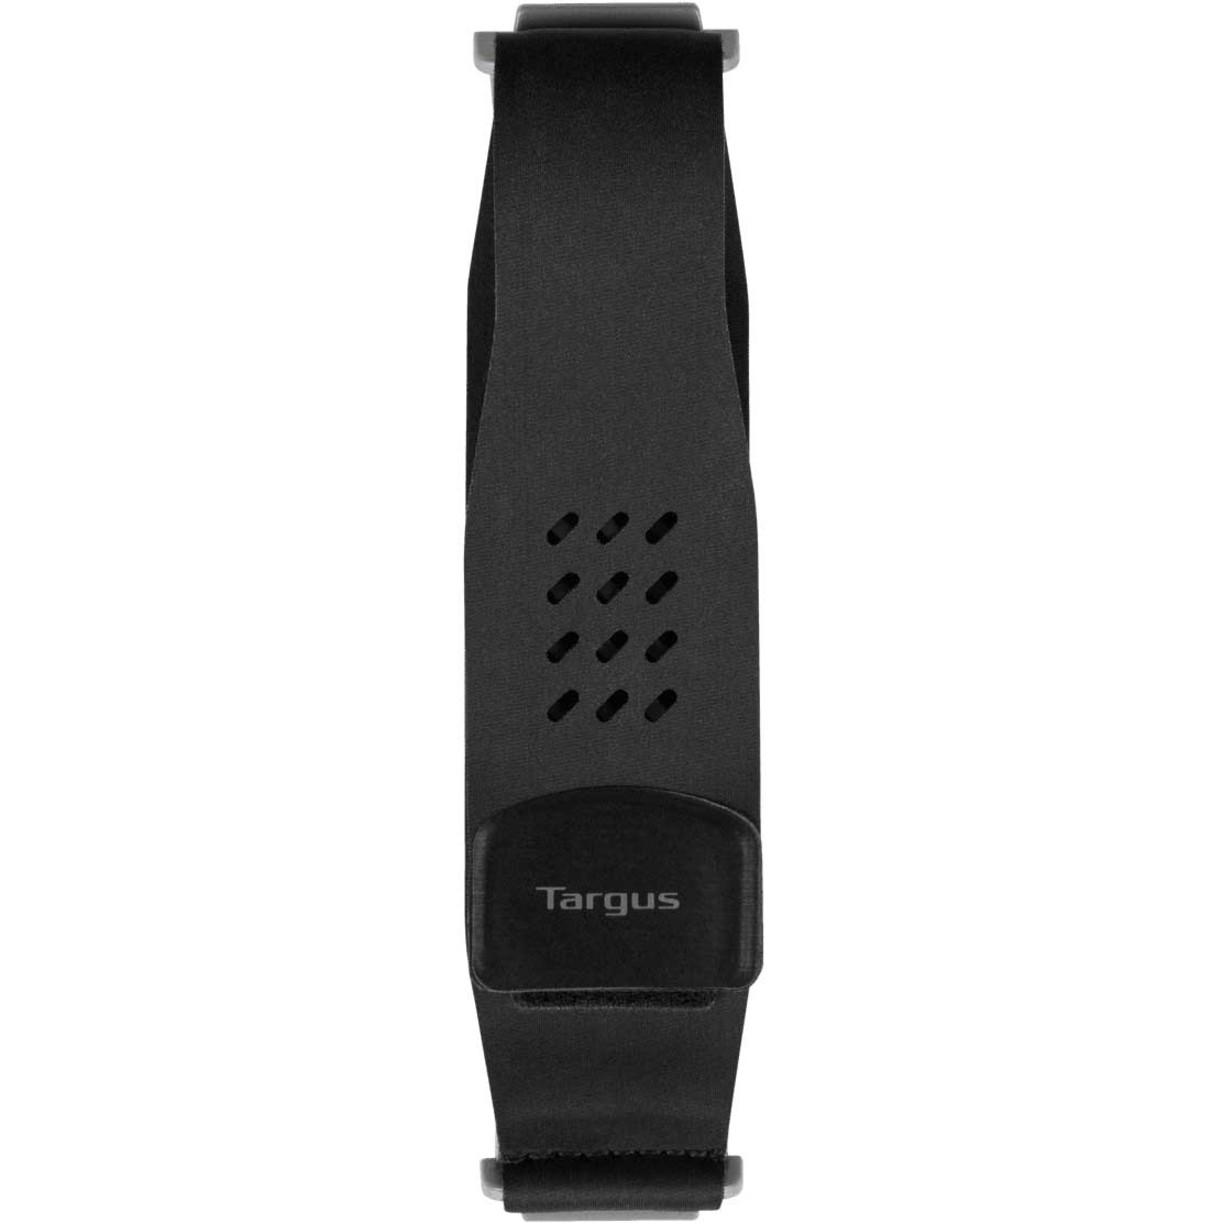 Targus Hand Strap for SafePort Rugged Tablet Case1″ Height x 6″ Width LengthBlackNeoprene THA100GLZ